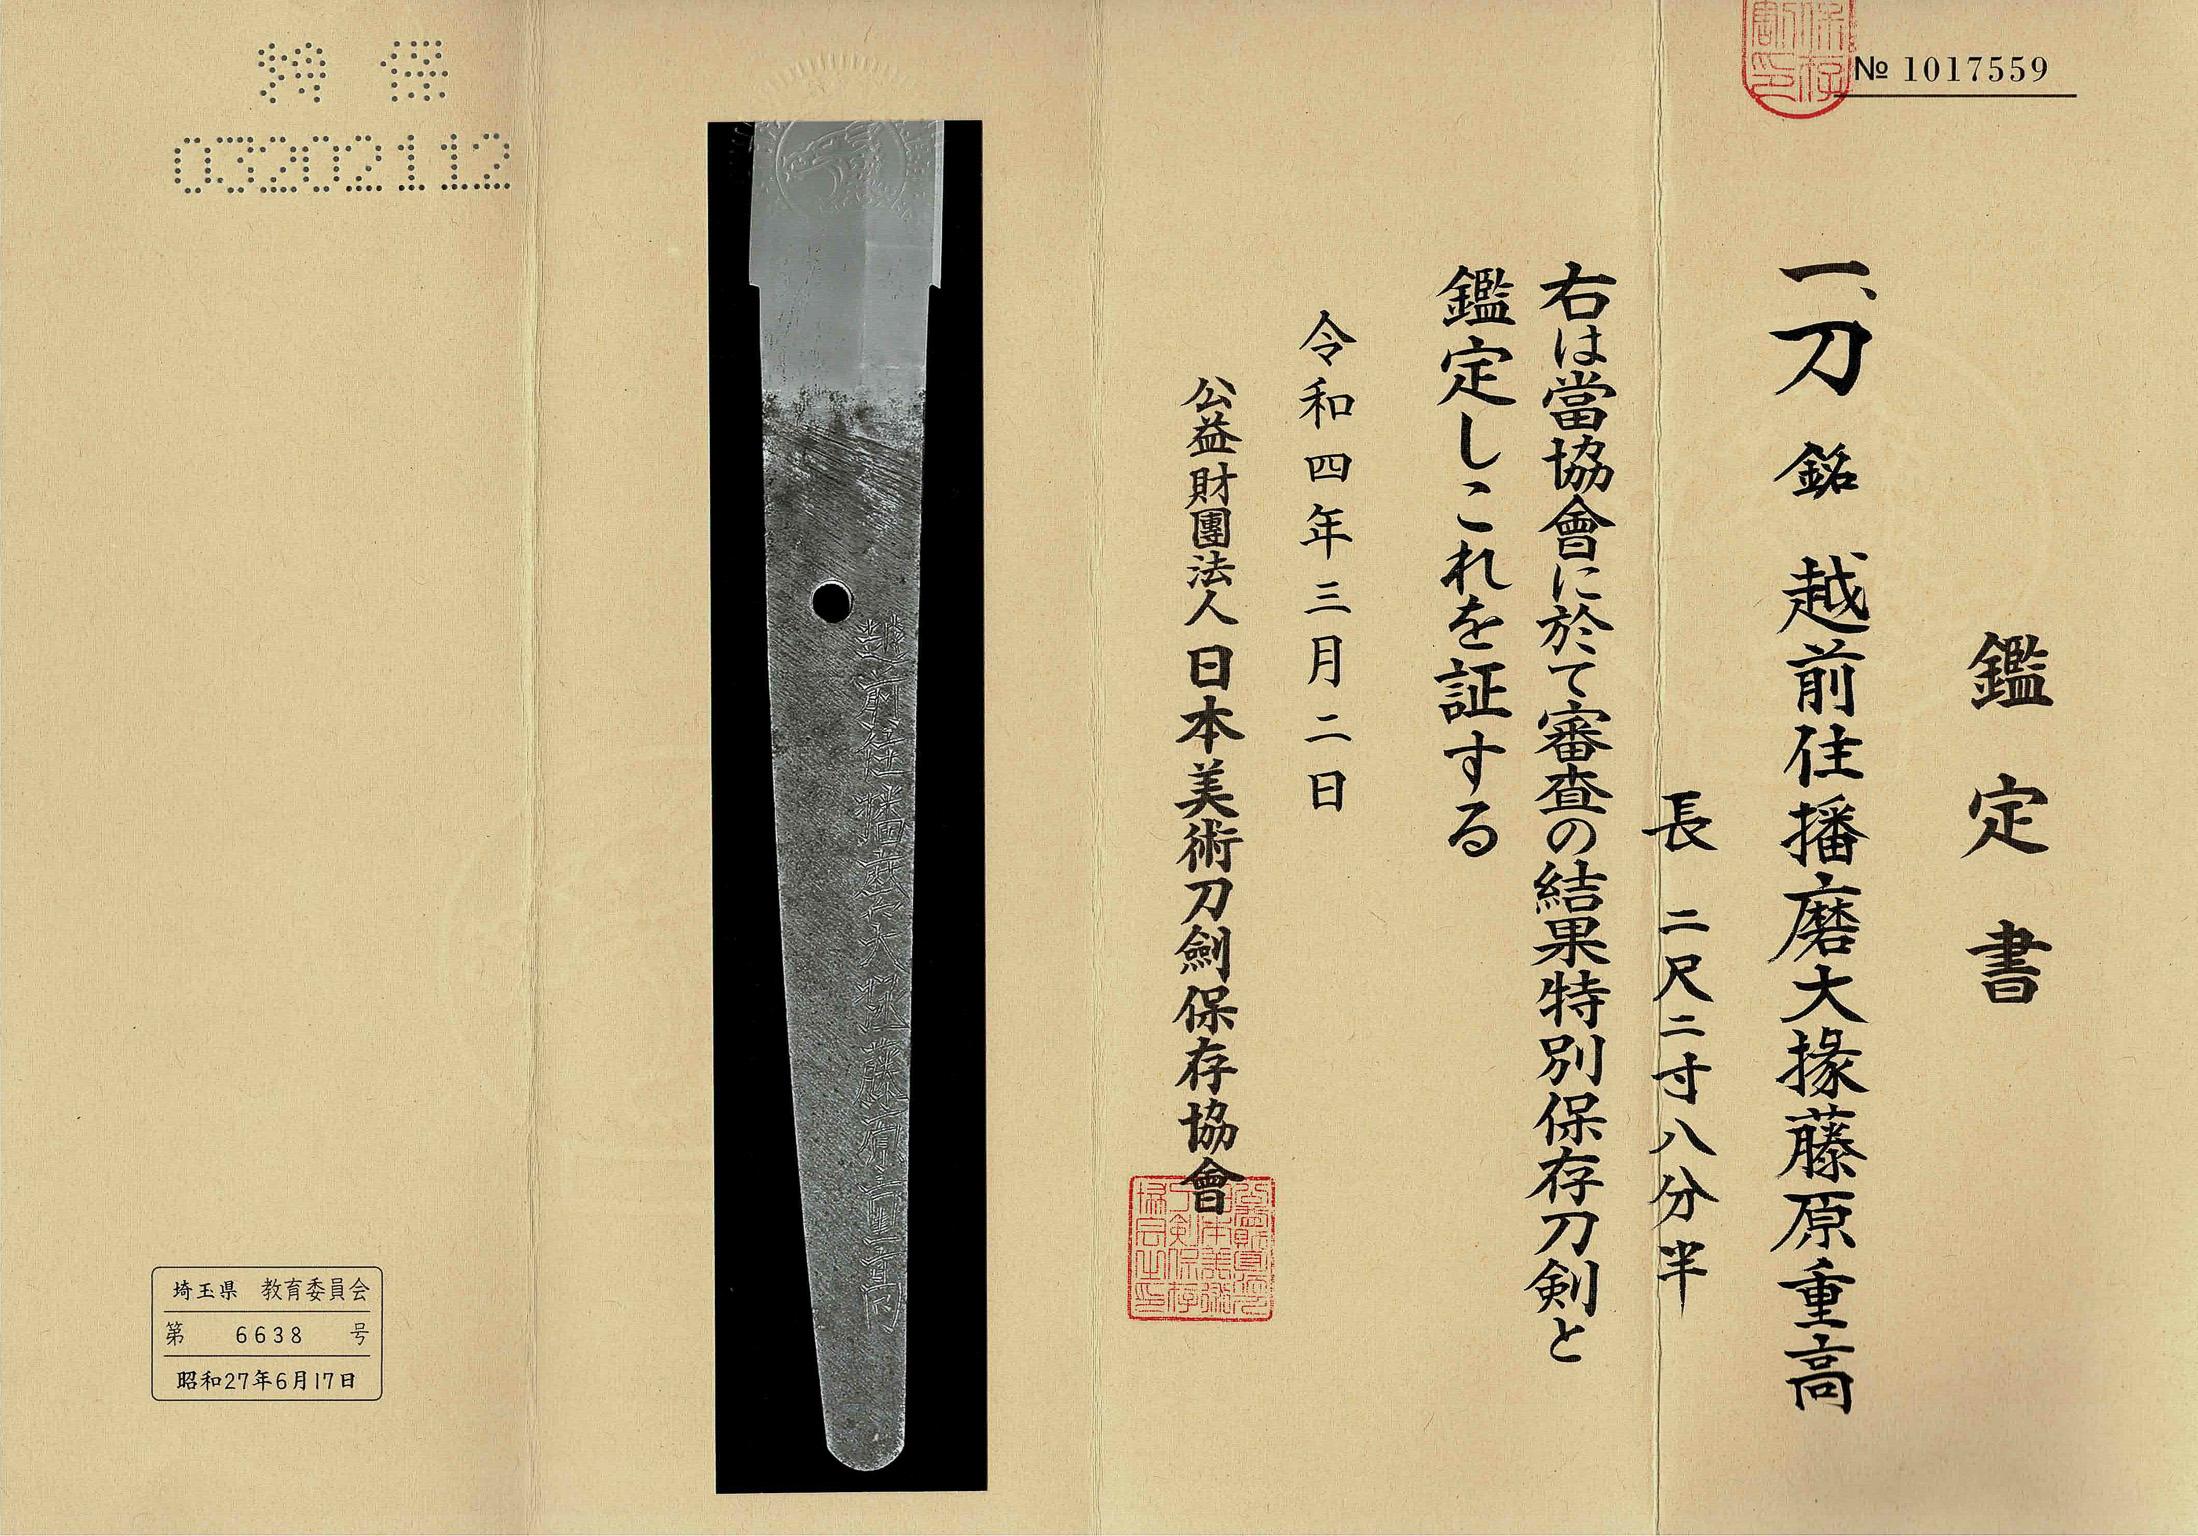 Katana Shinto Echizen in koshirae
Early Edo Period (1615-1867), circa 1620-60

NBTHK Tokubetsu Hozon Token

echizen ju harima daijo fujiwara shigetaka


Nagasa [length]: 69.2 cm
Sori [curvature]: 1.2 cm
Motohaba [bottom width]: 3.1 cm
Sakihaba [top